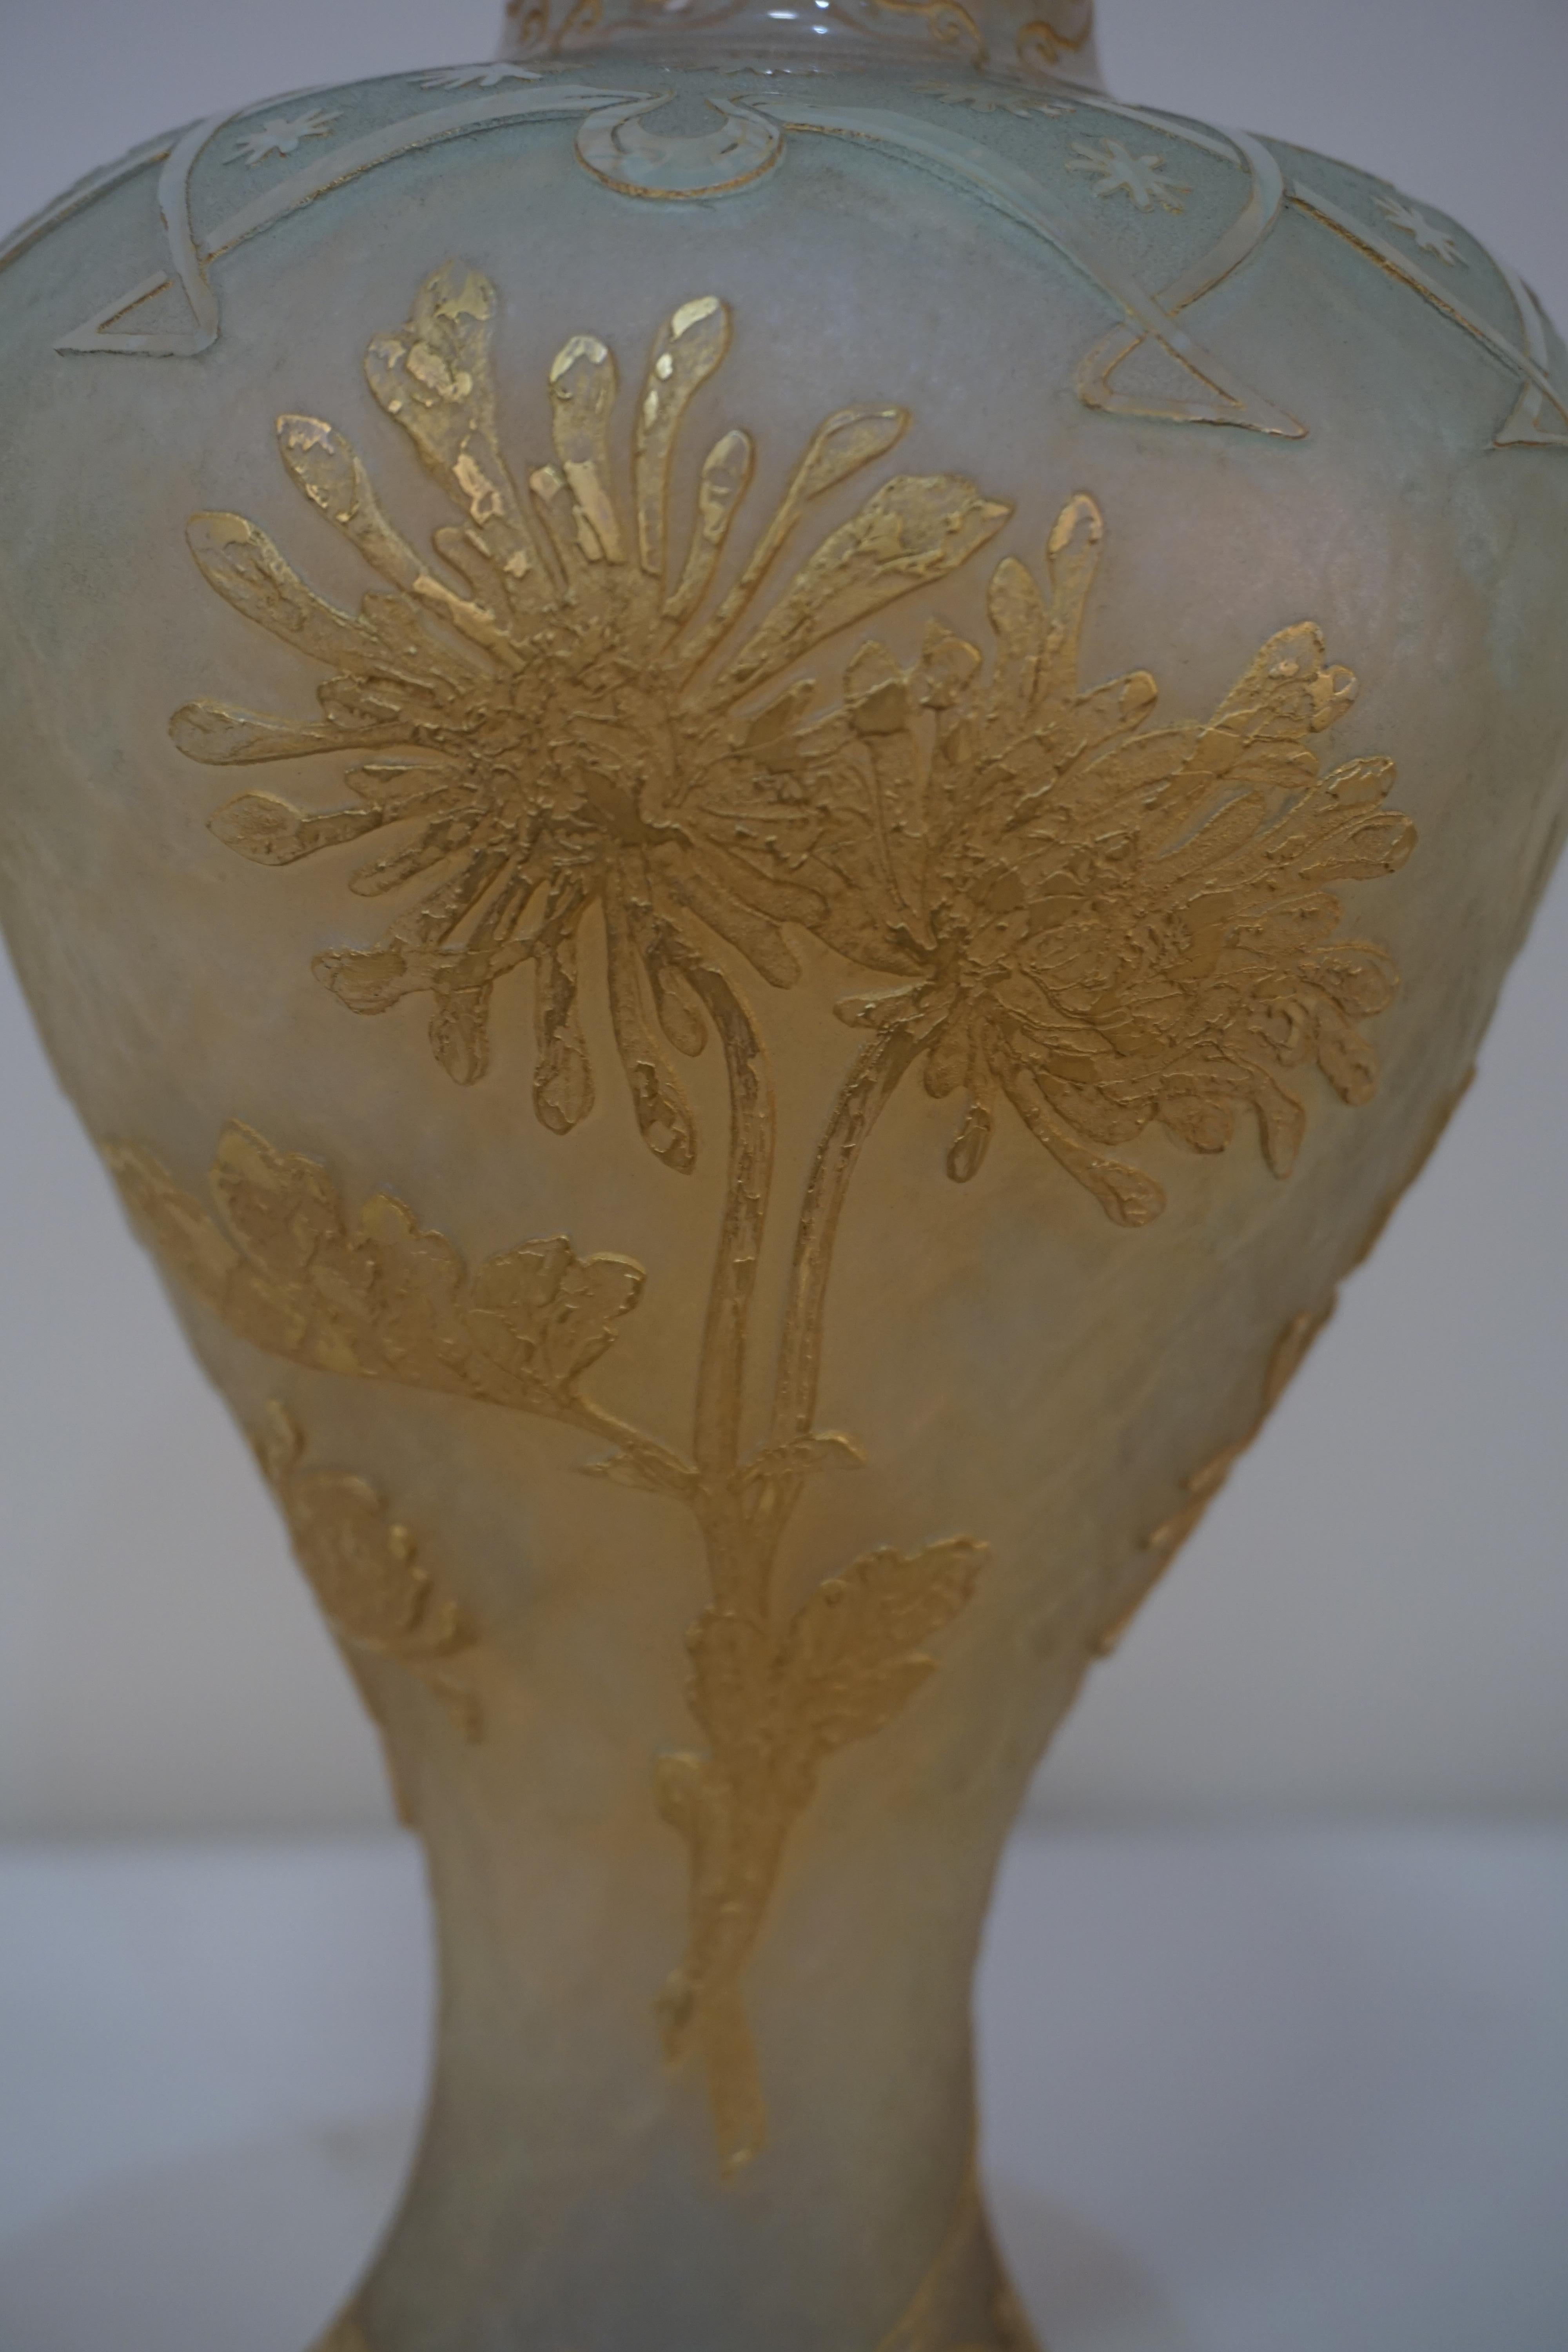 Acid cut flora design opalescent glass vase by Daum Nancy.